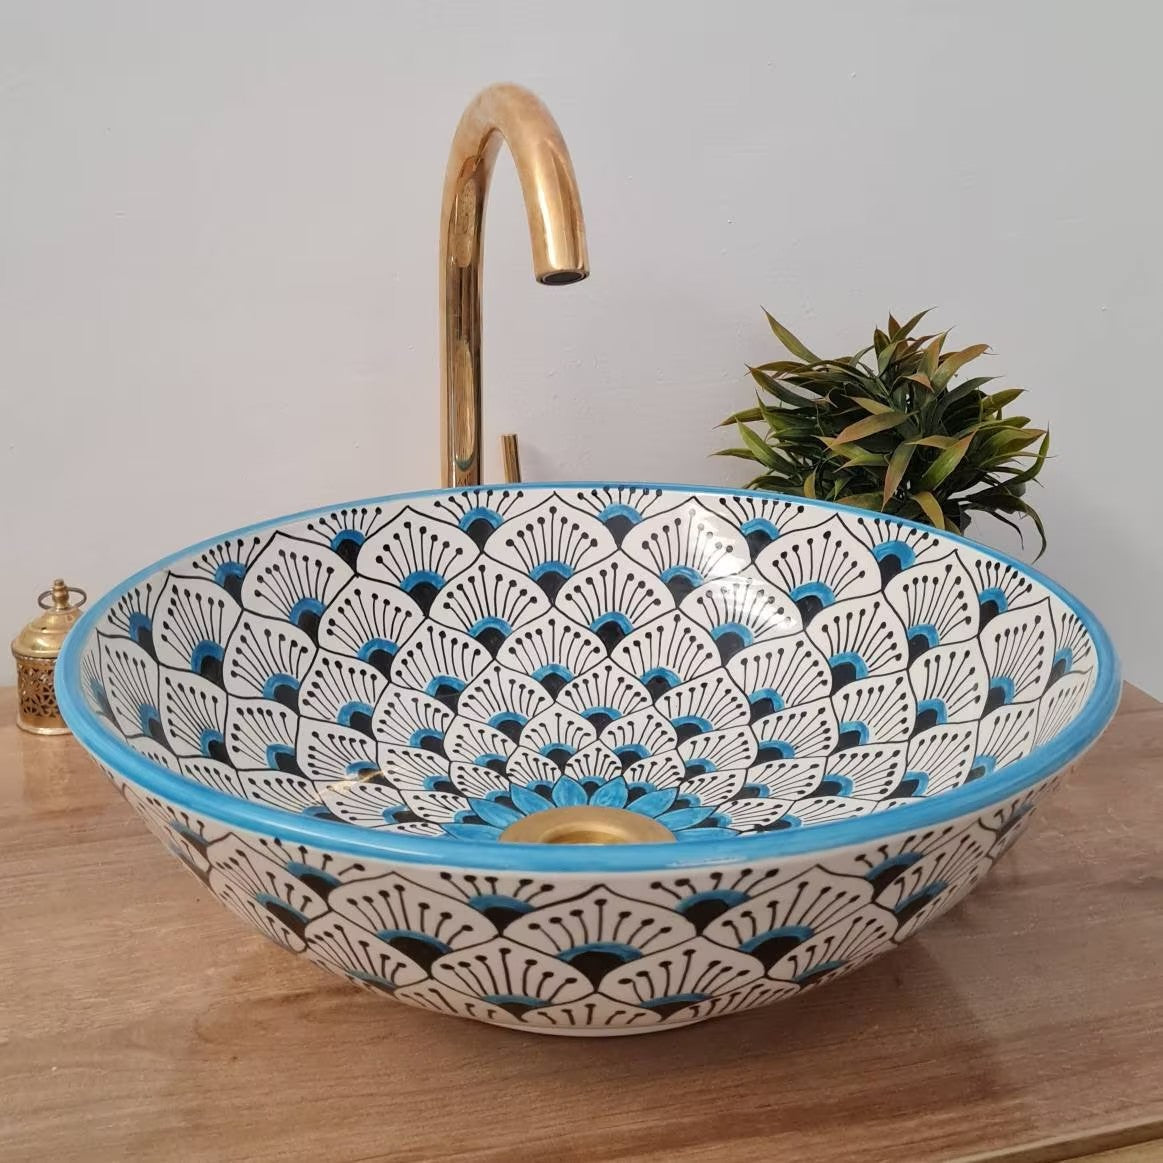 Moroccan sink | moroccan ceramic sink | bathroom sink | moroccan bathroom basin | cloakroom basin | Bleu sink #156